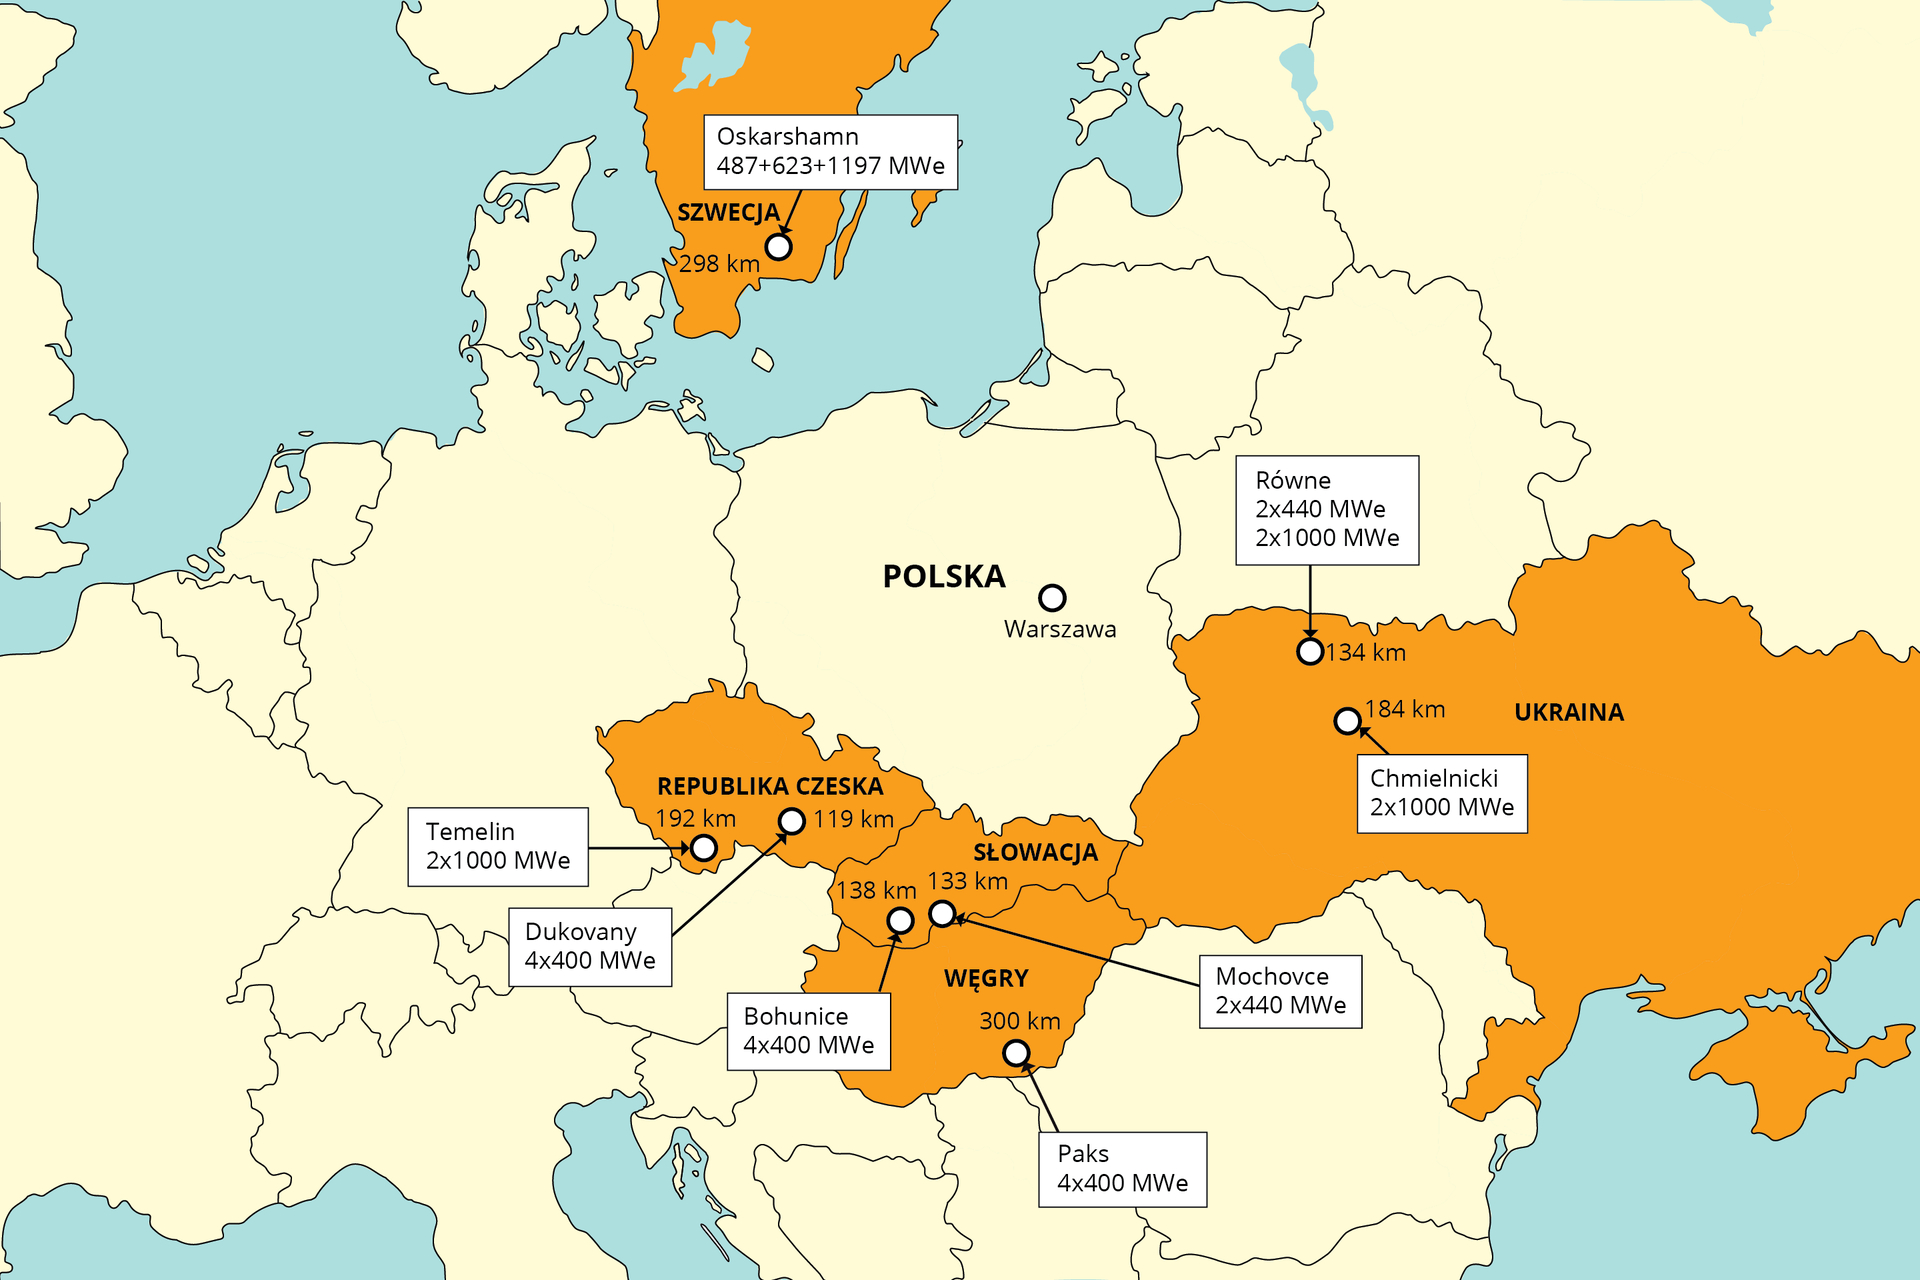 Mapa prezentuje elektrownie atomowe w Europie Środkowej i Wschodniej